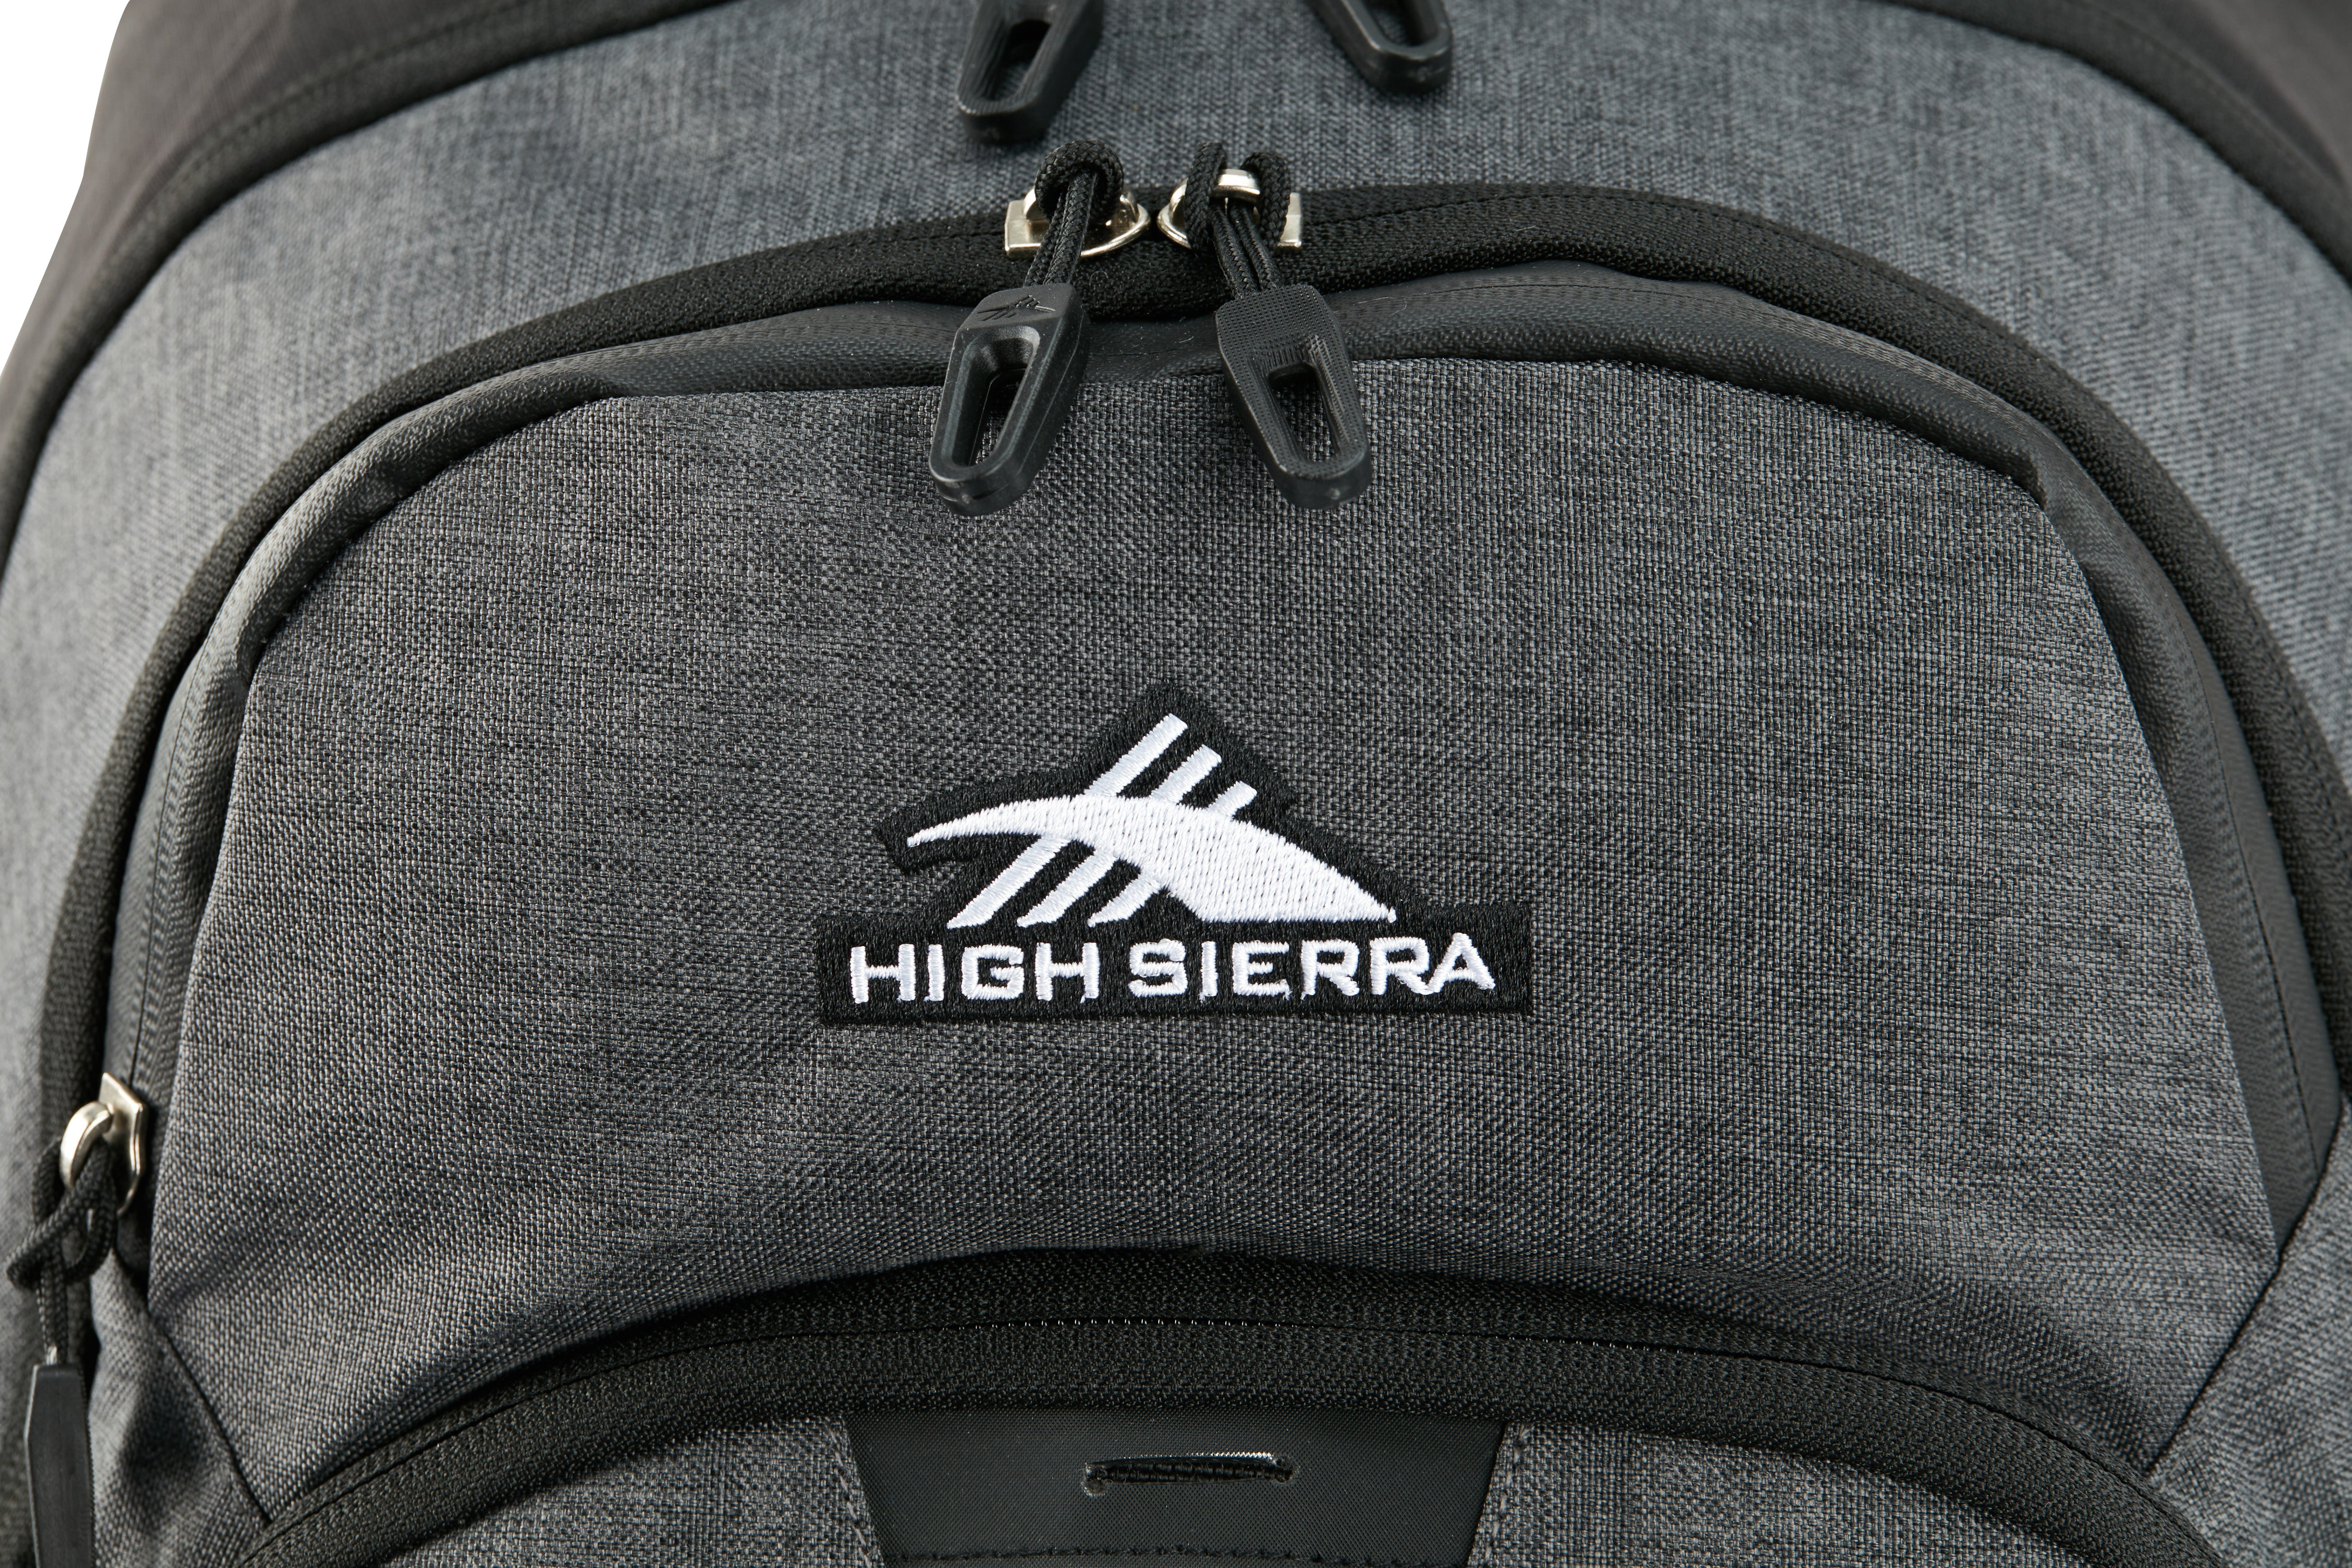 High Sierra - Jarvis Pro backpack on wheels - Black-10